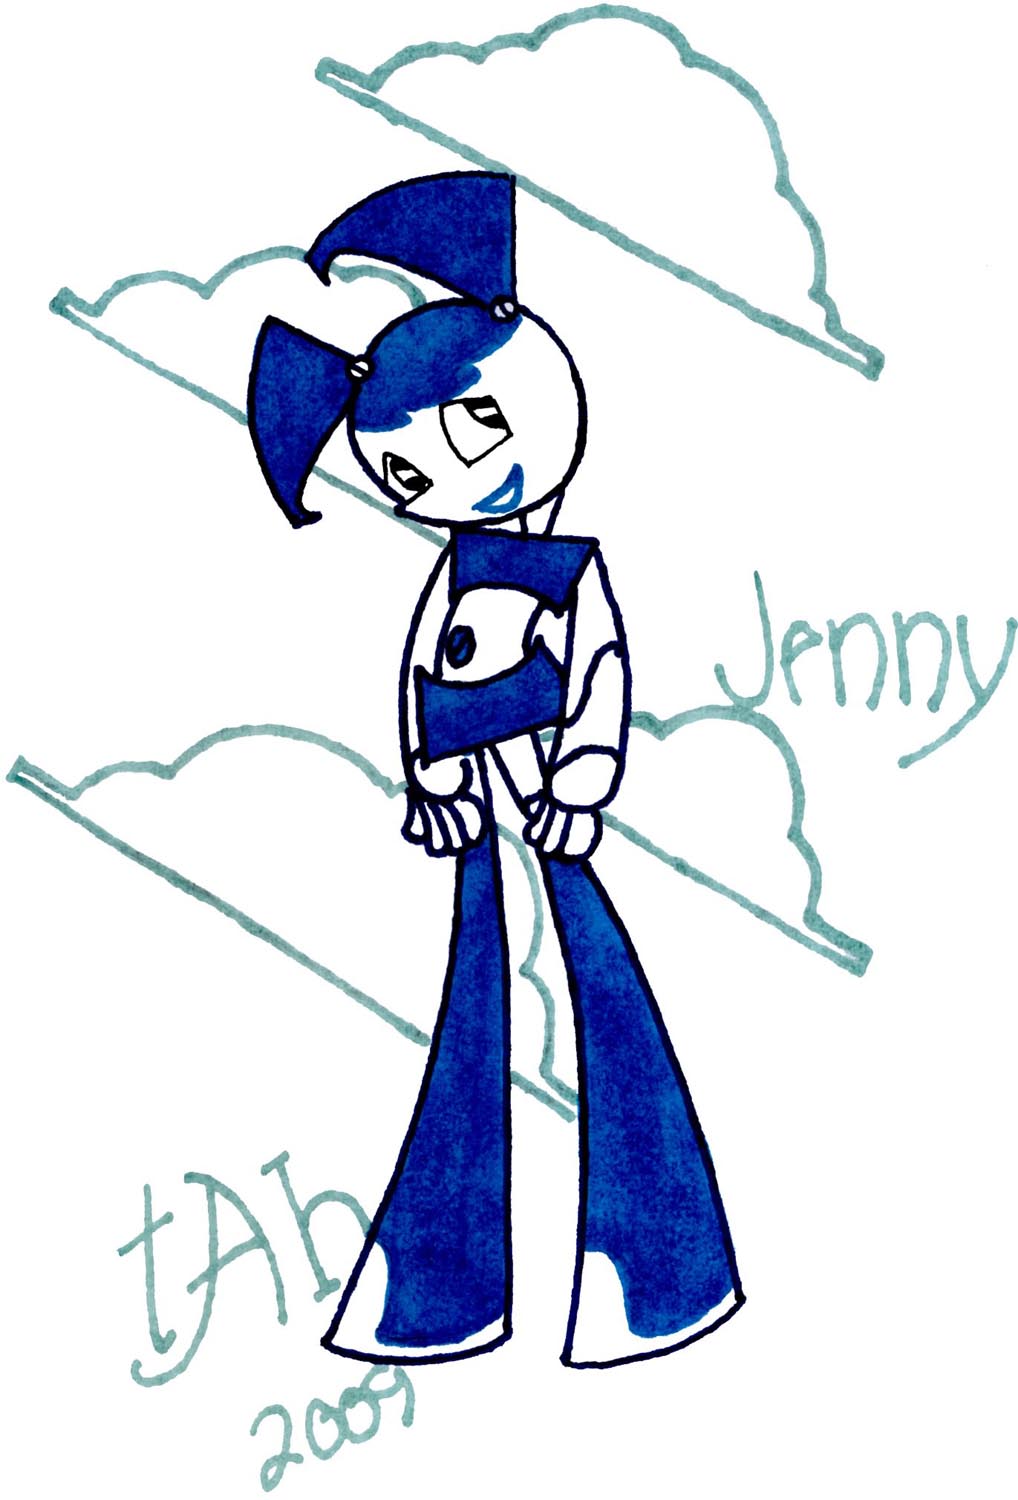 Jenny by nezcabob